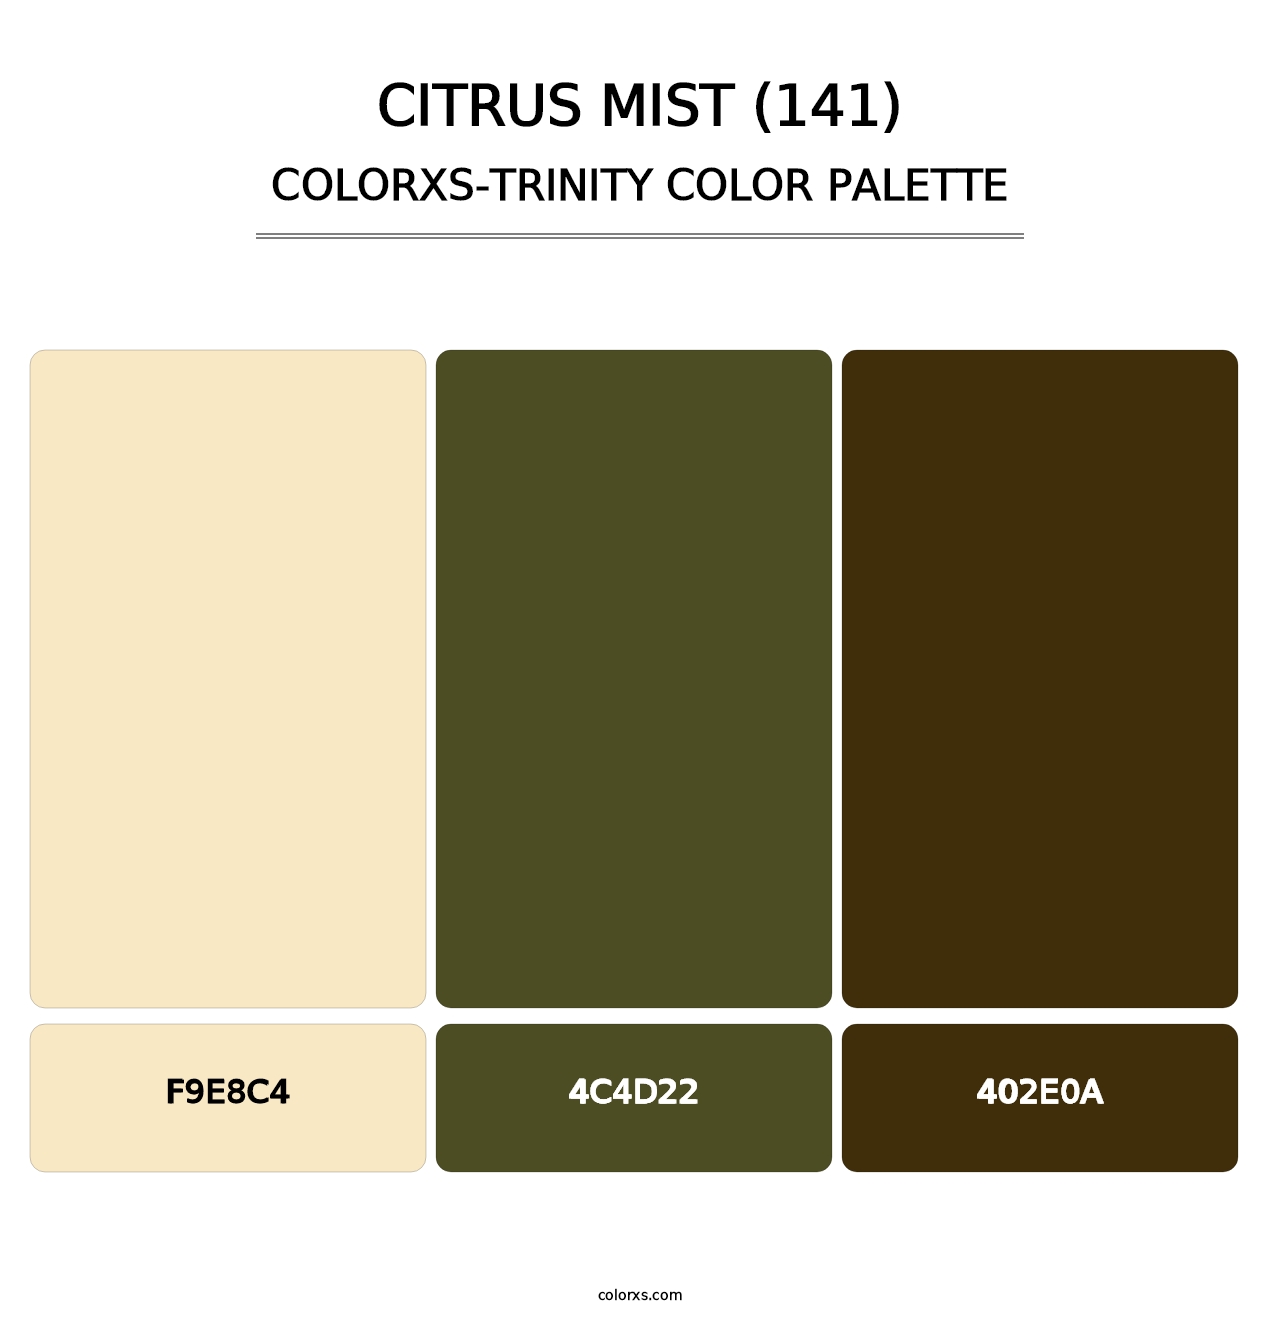 Citrus Mist (141) - Colorxs Trinity Palette